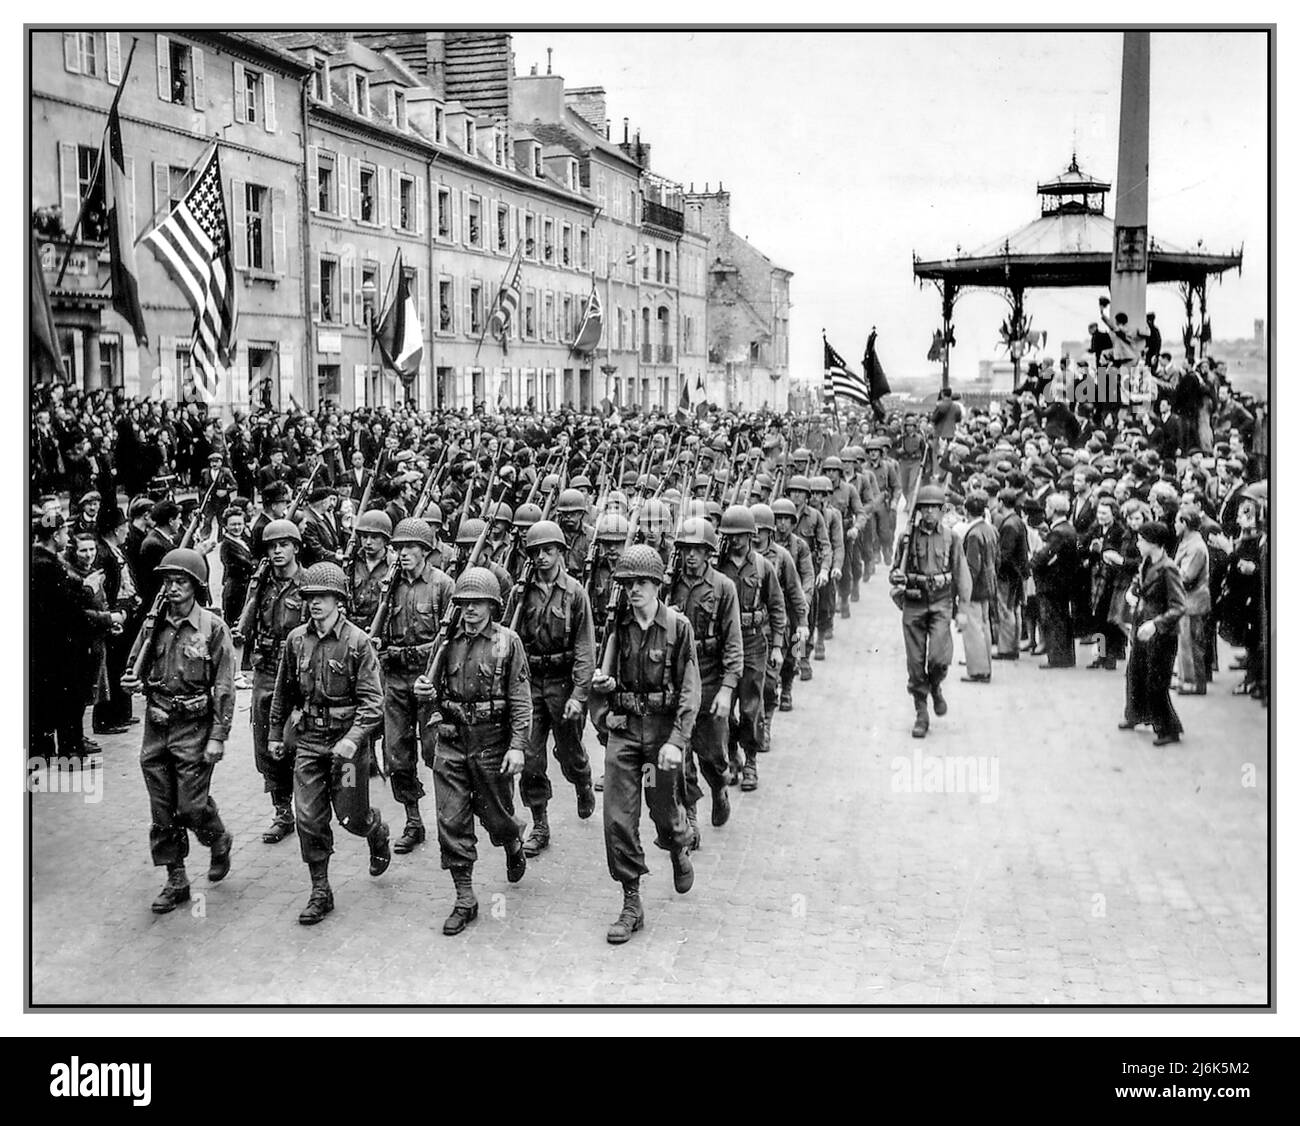 WW2 LIBERACIÓN FRANCIA NAZIS CHERBOURG tropas americanas marchan a través de la Place de la Republique después del Día D a los alegres y olas de la población francesa local Cherbourg , Francia 27 de junio de 1944. Segunda Guerra Mundial Segunda Guerra Mundial Foto de stock